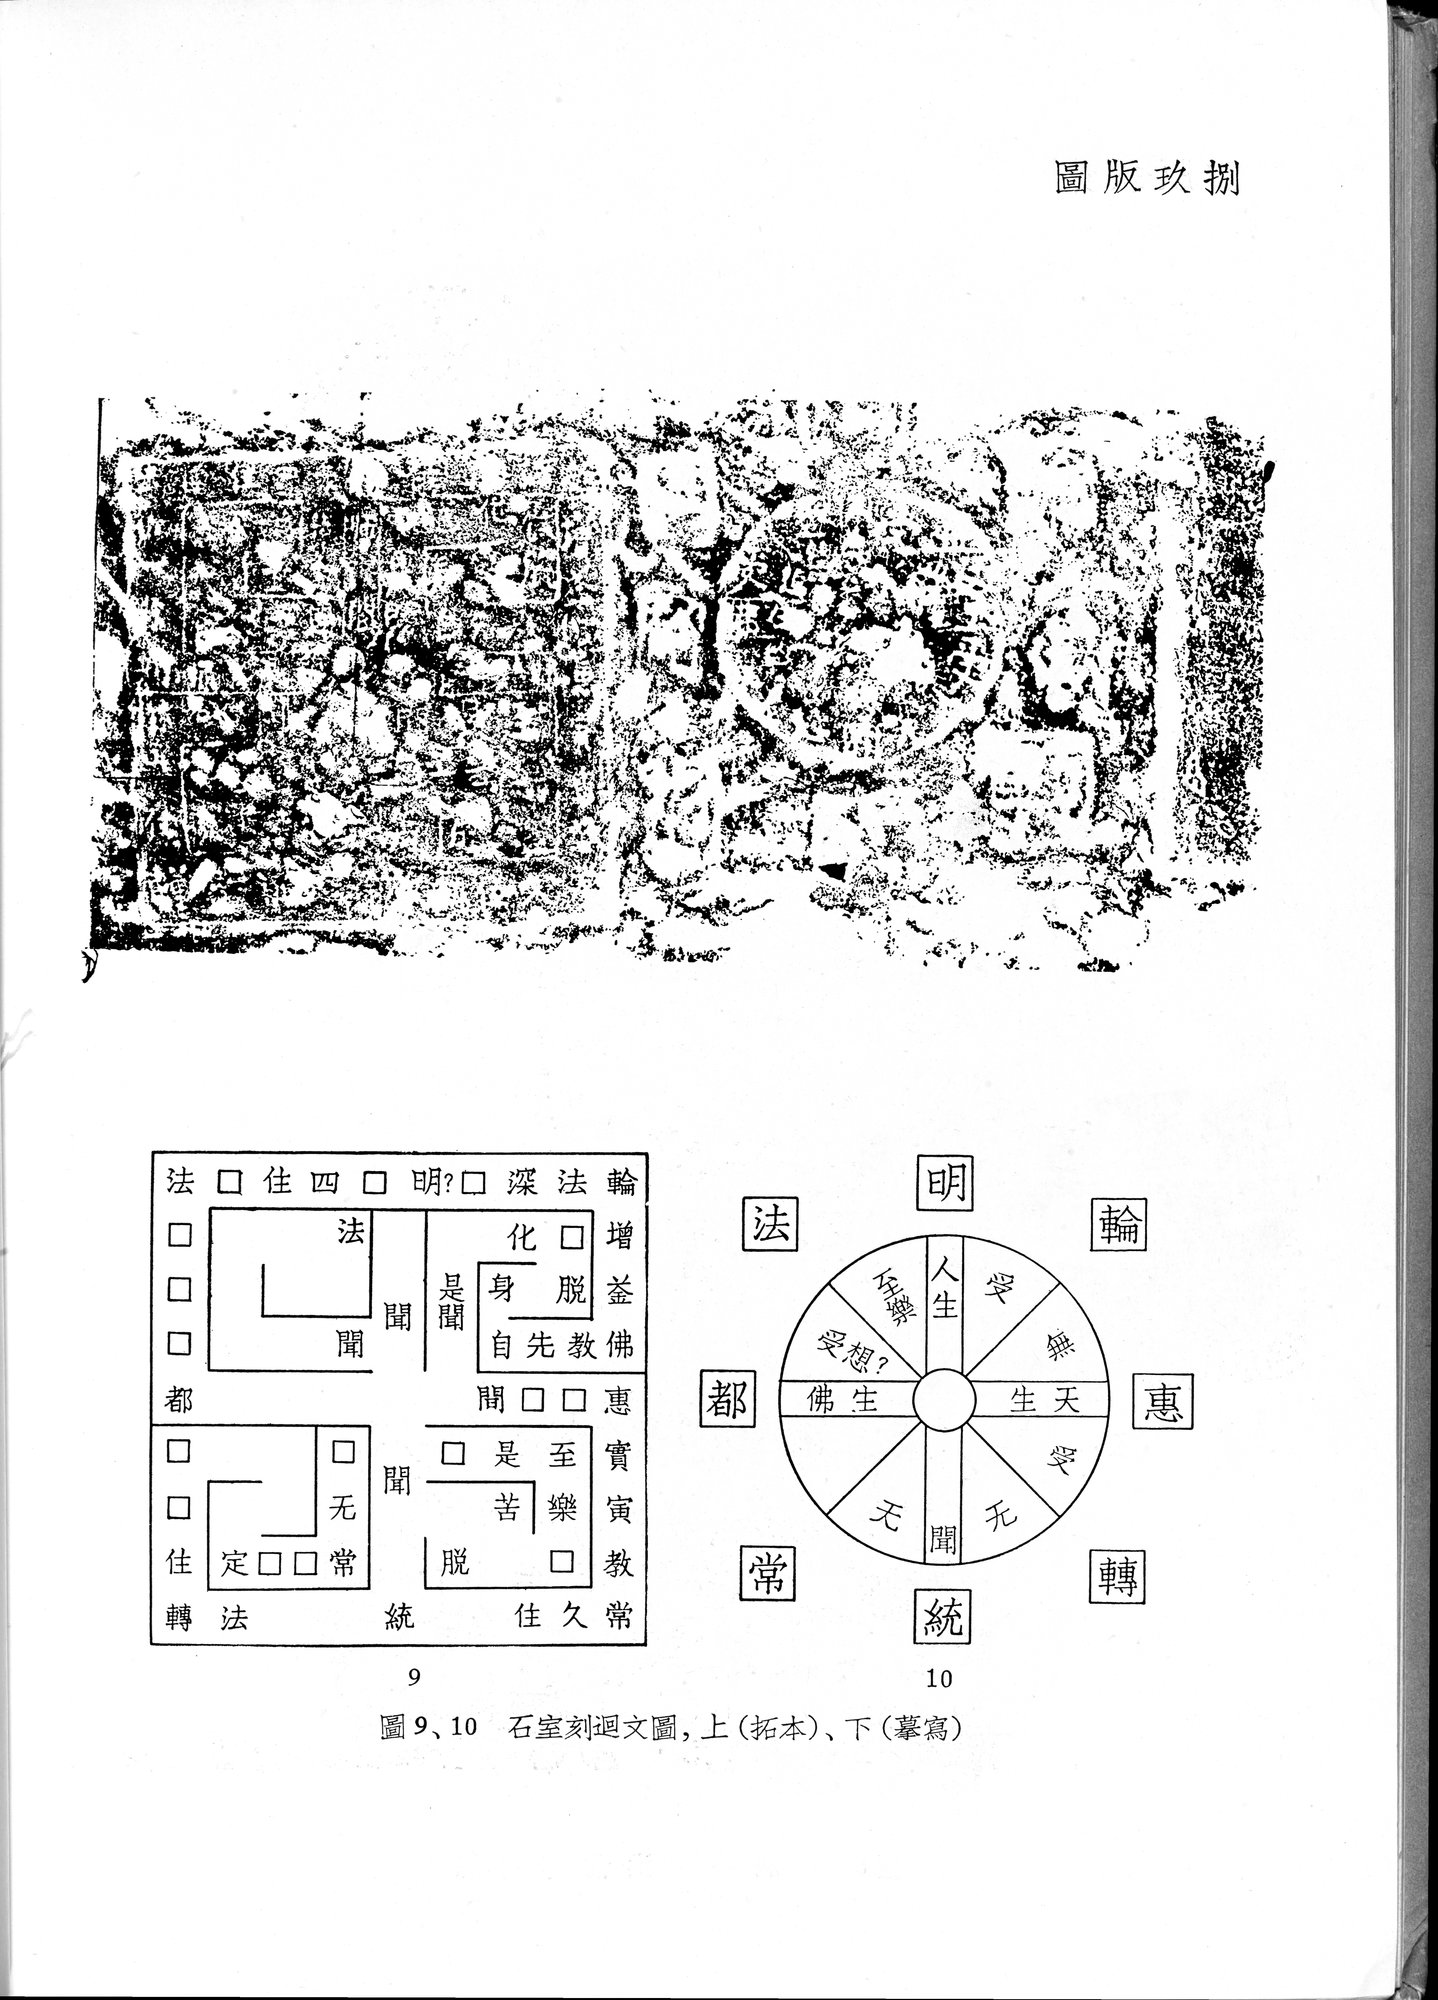 塔里木盆地考古記 : vol.1 / Page 332 (Grayscale High Resolution Image)